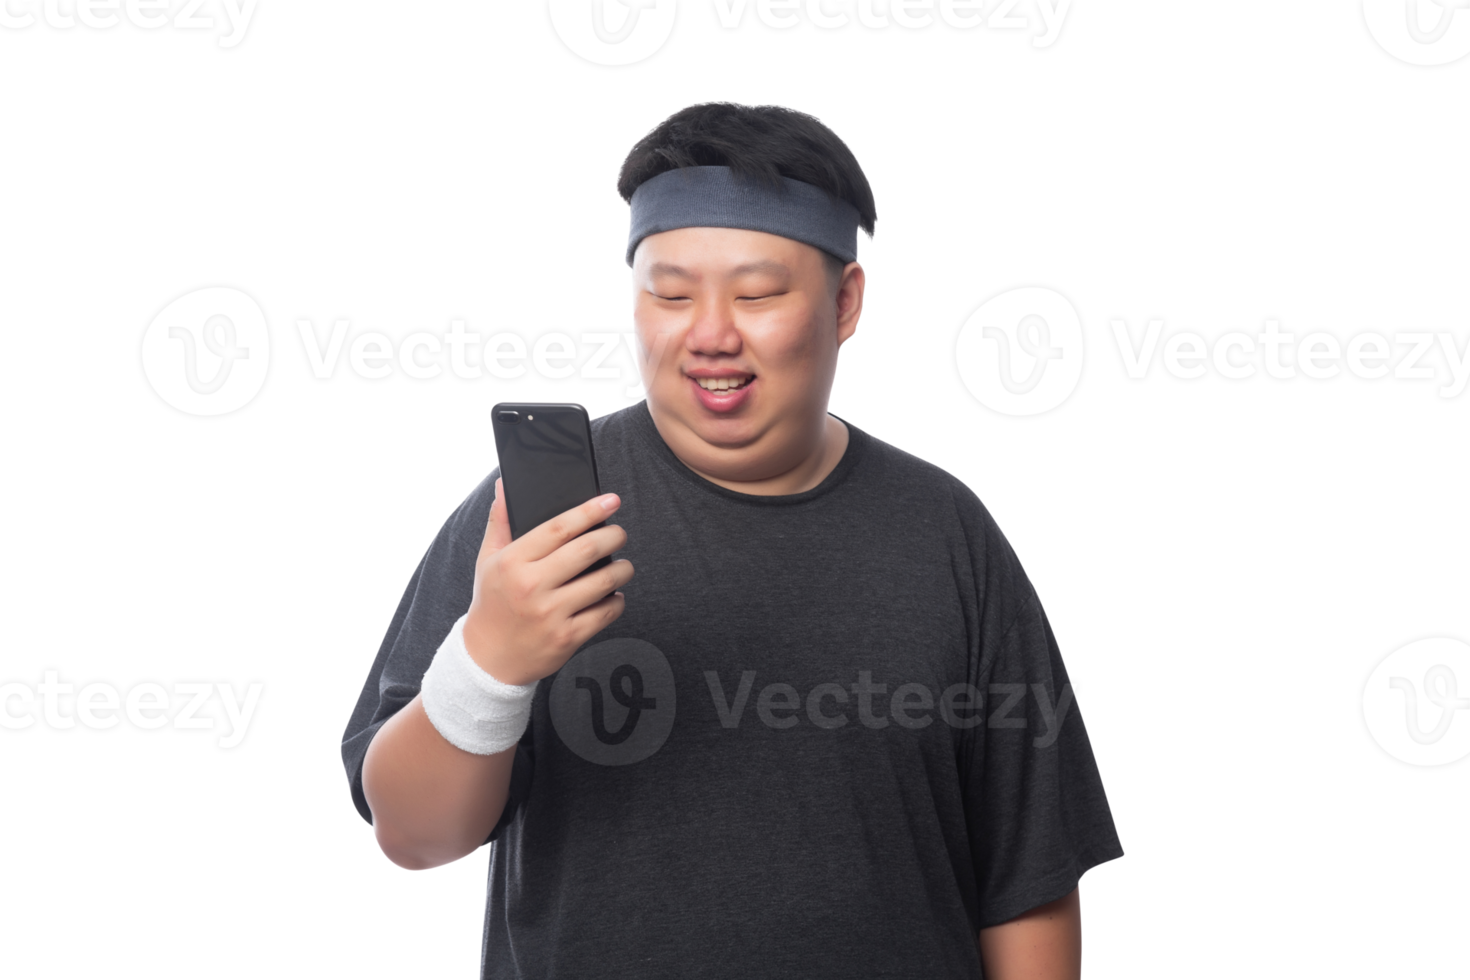 ung asiatisk fet sportman som använder smartphone, png-fil png